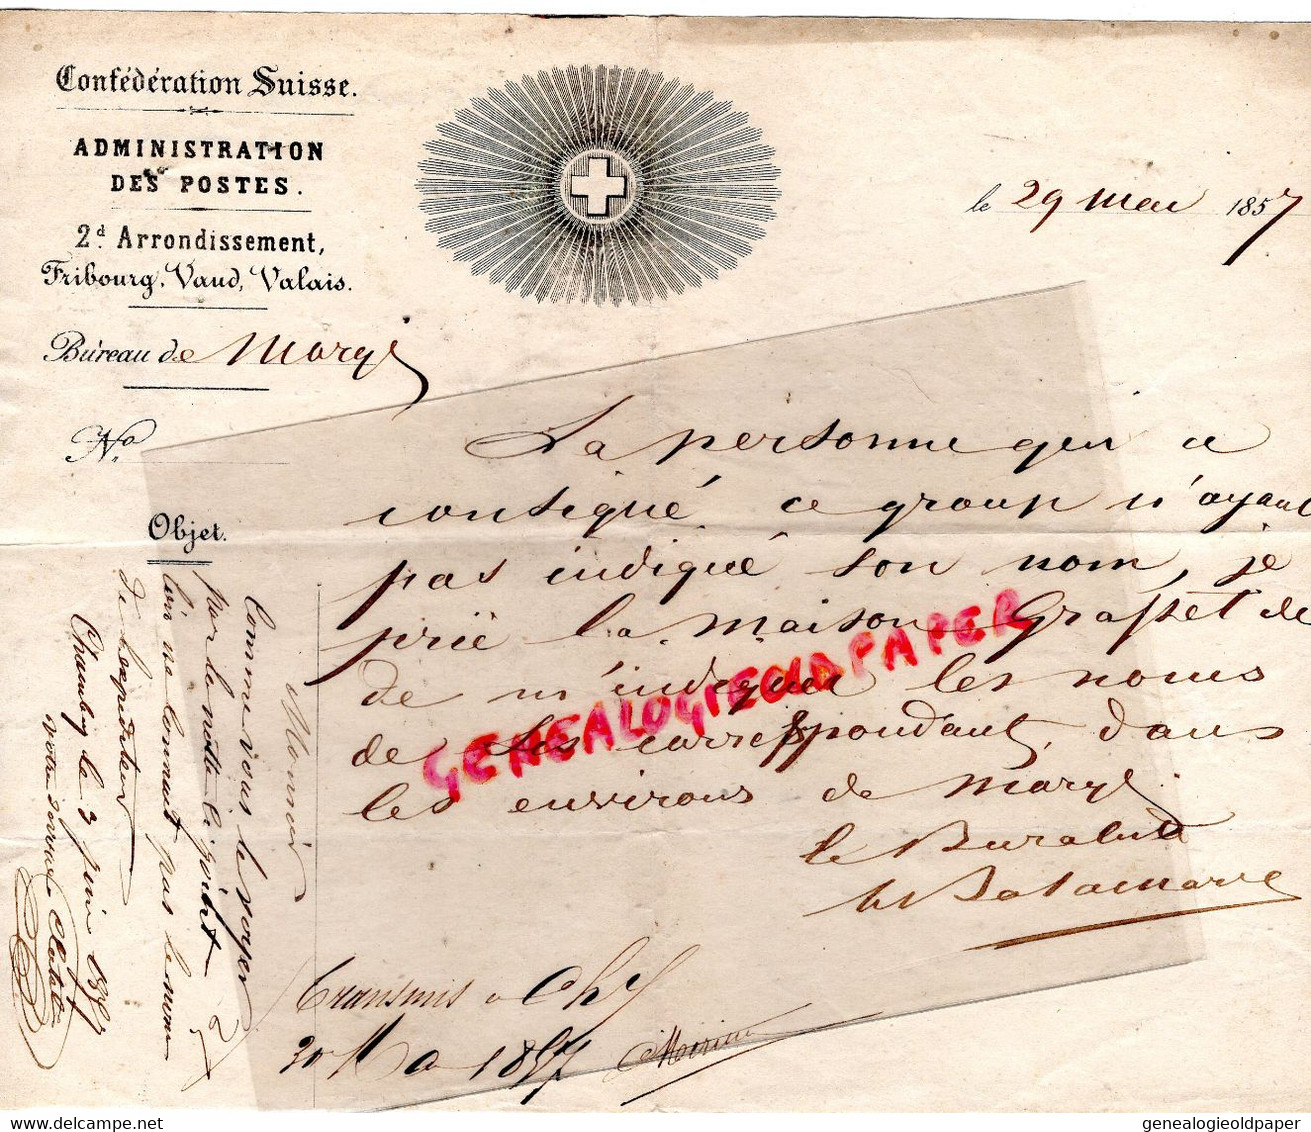 SUISSE- RARE LETTRE ADIMISTRATION DES POSTES-POSTE-FRIBOURG VAUD VALAIS-29 MAI 1857 - Documents Historiques